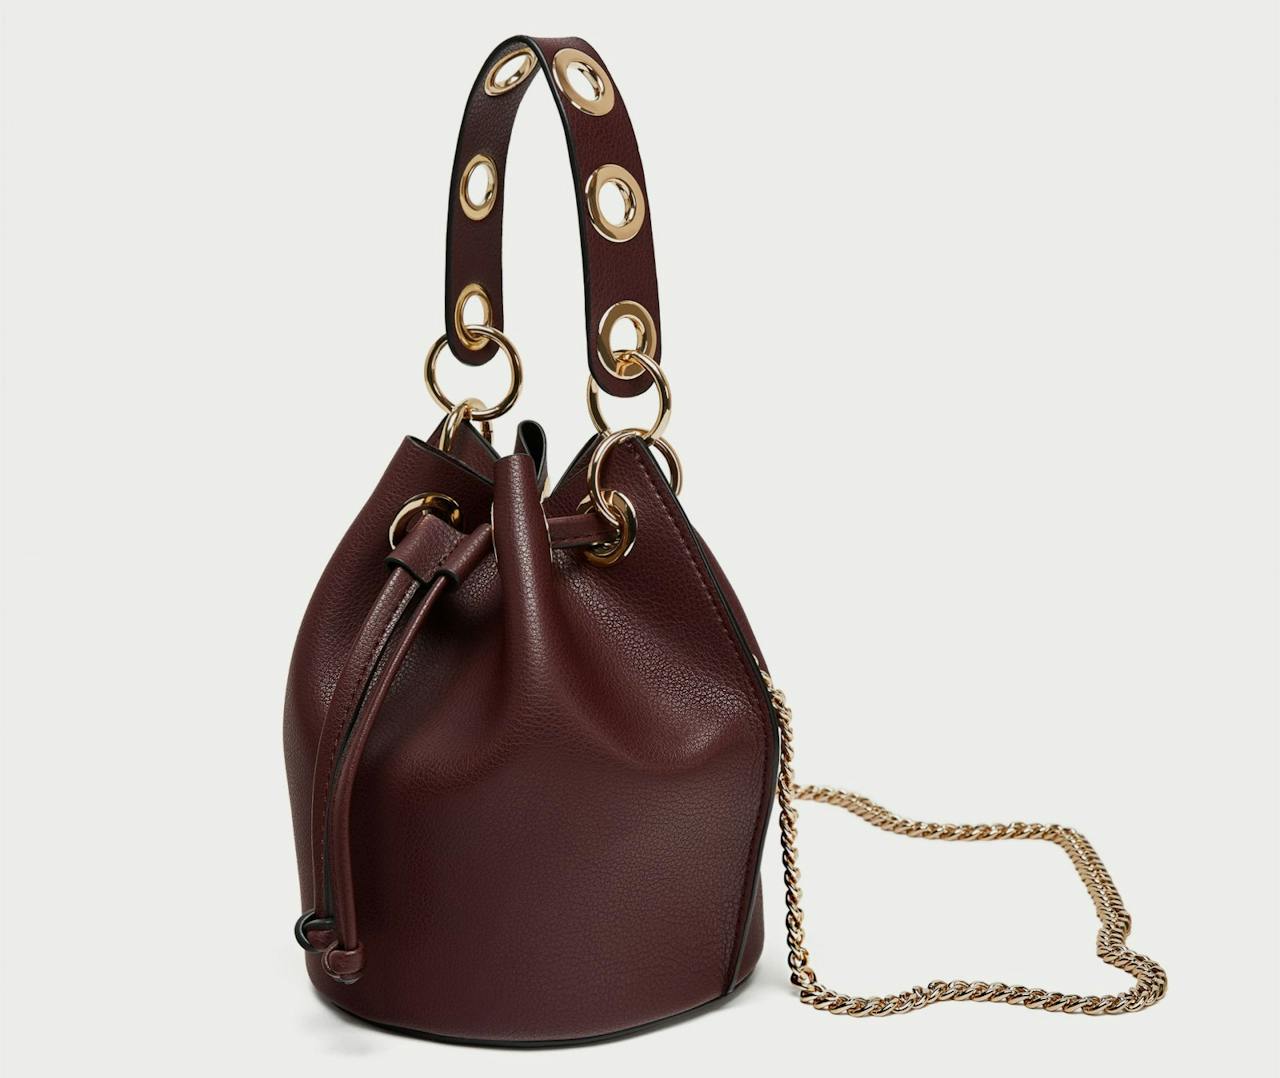 Mini bolso saco ollado de Zara, por 5,99 euros (antes 19,95)